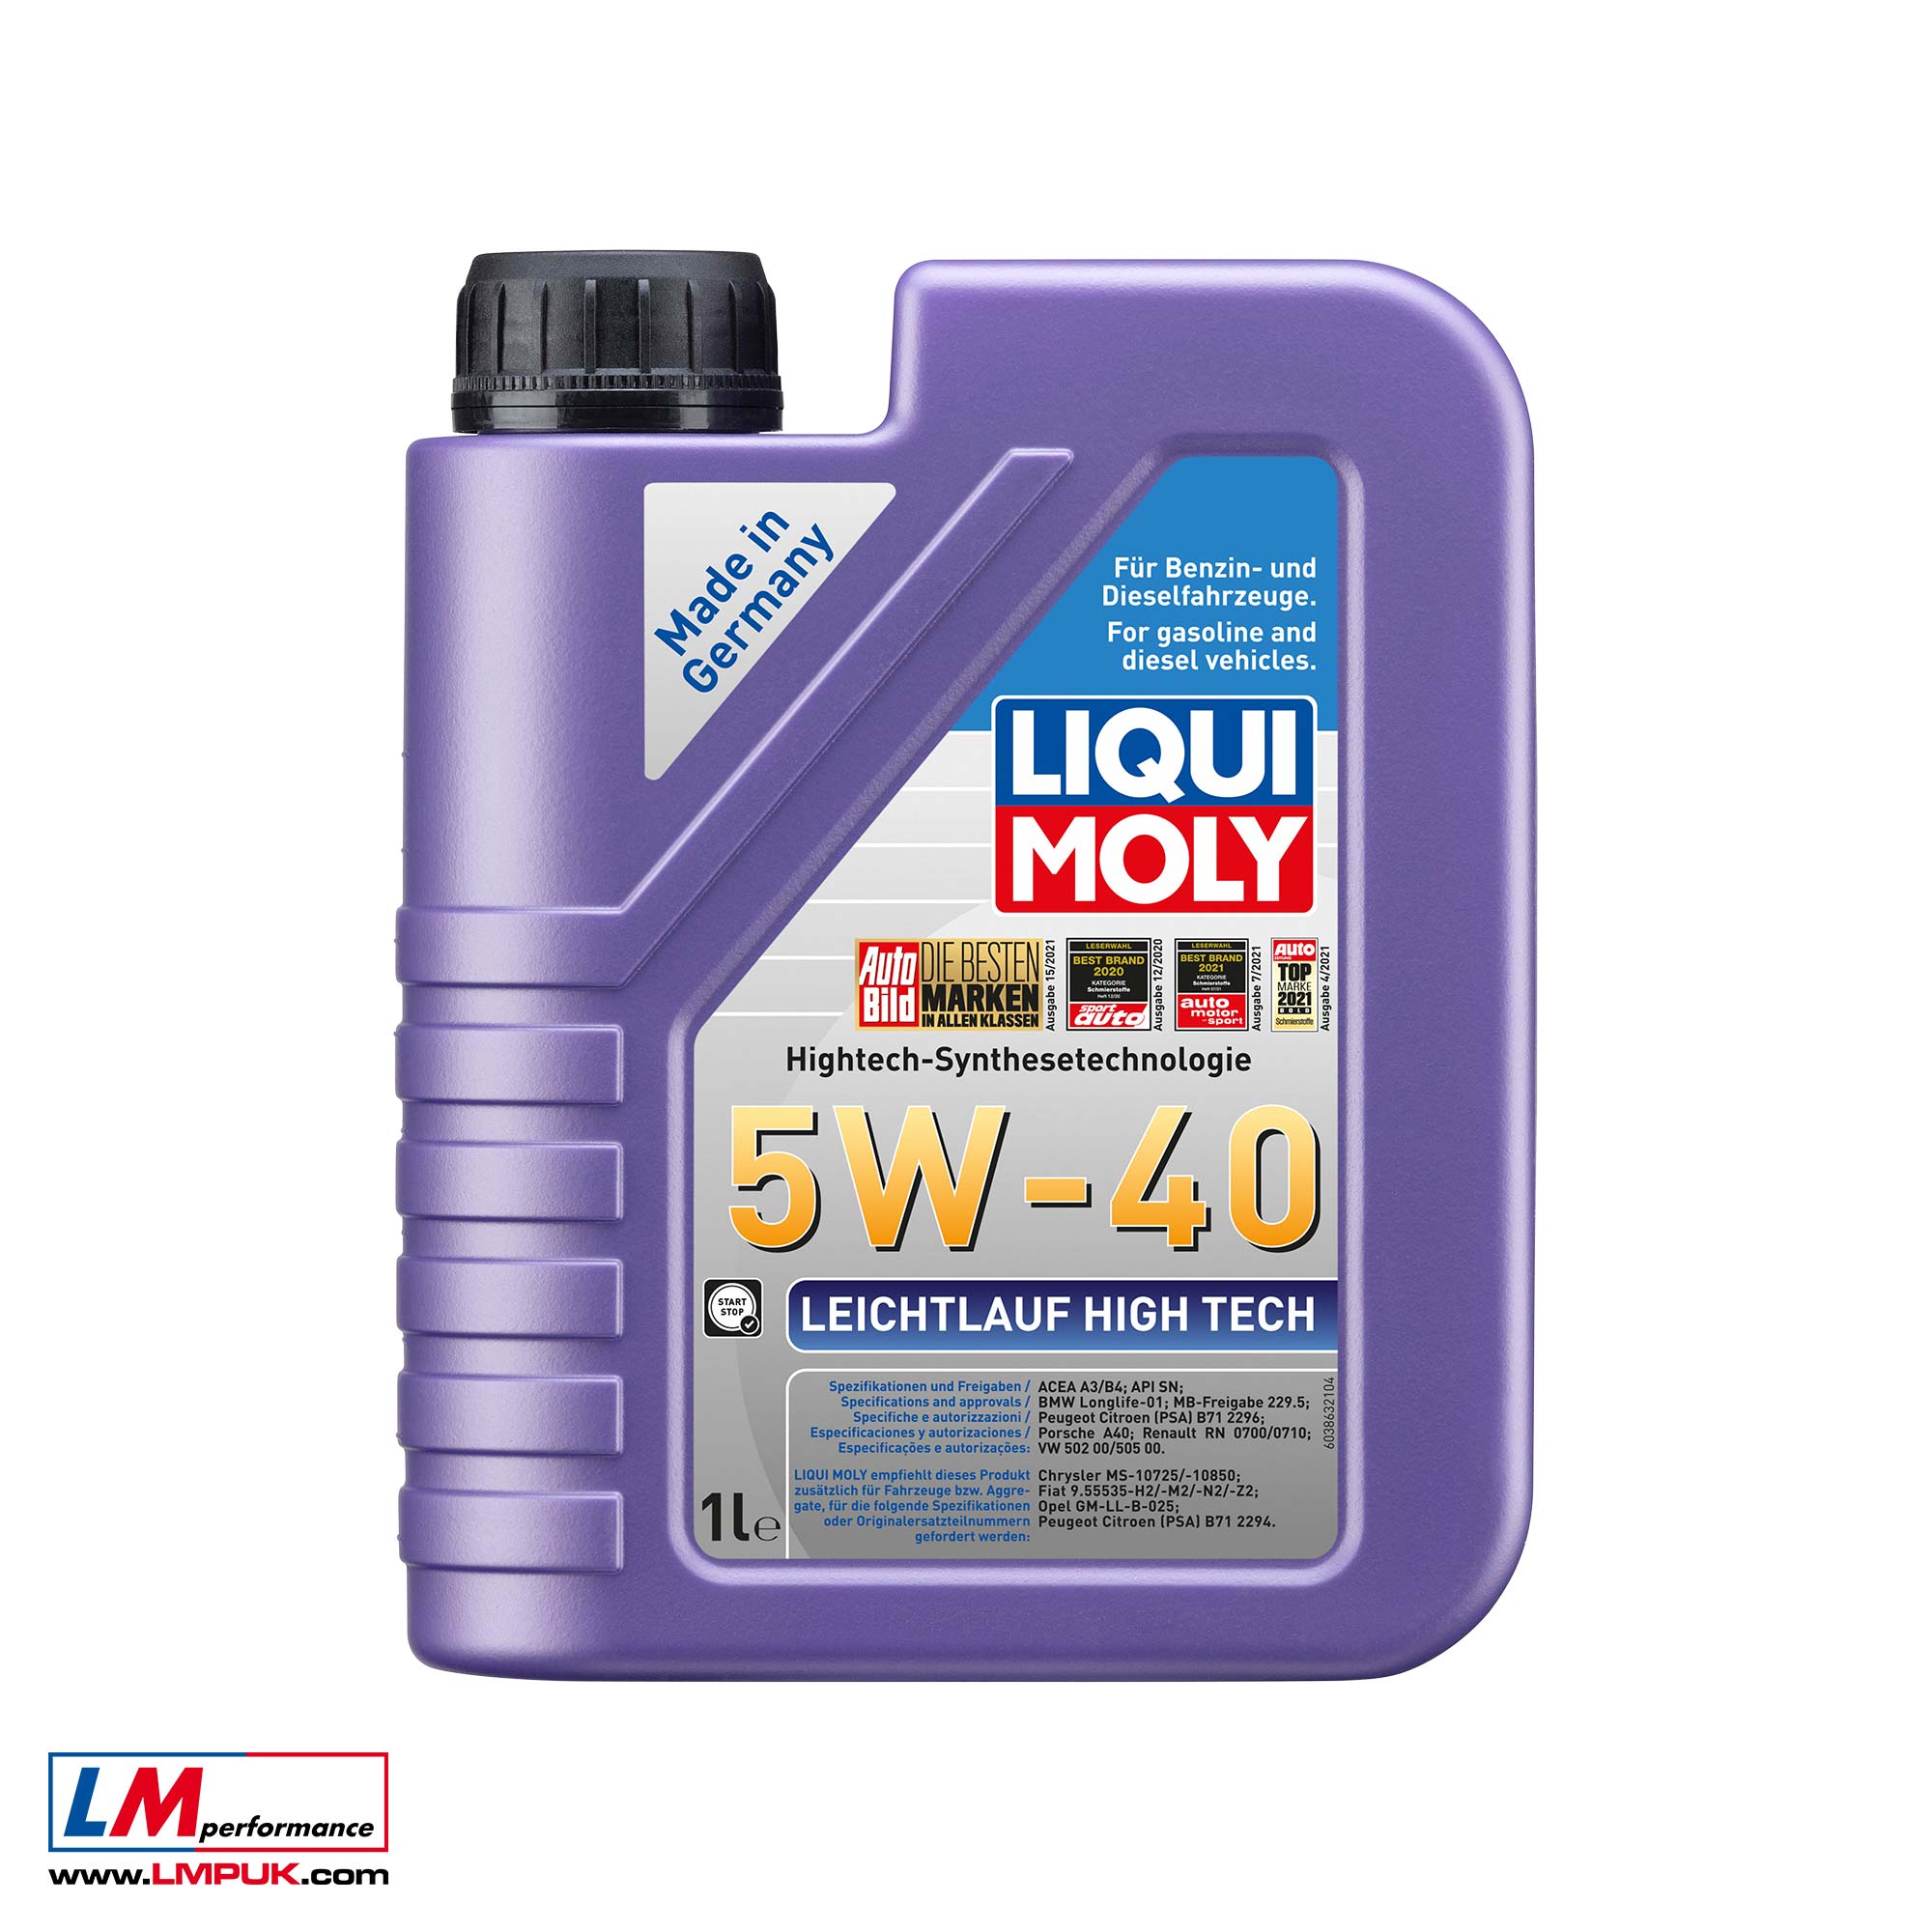 Leichtlauf High Tech 5W-40 Engine Oil by LIQUI MOLY – LM Performance